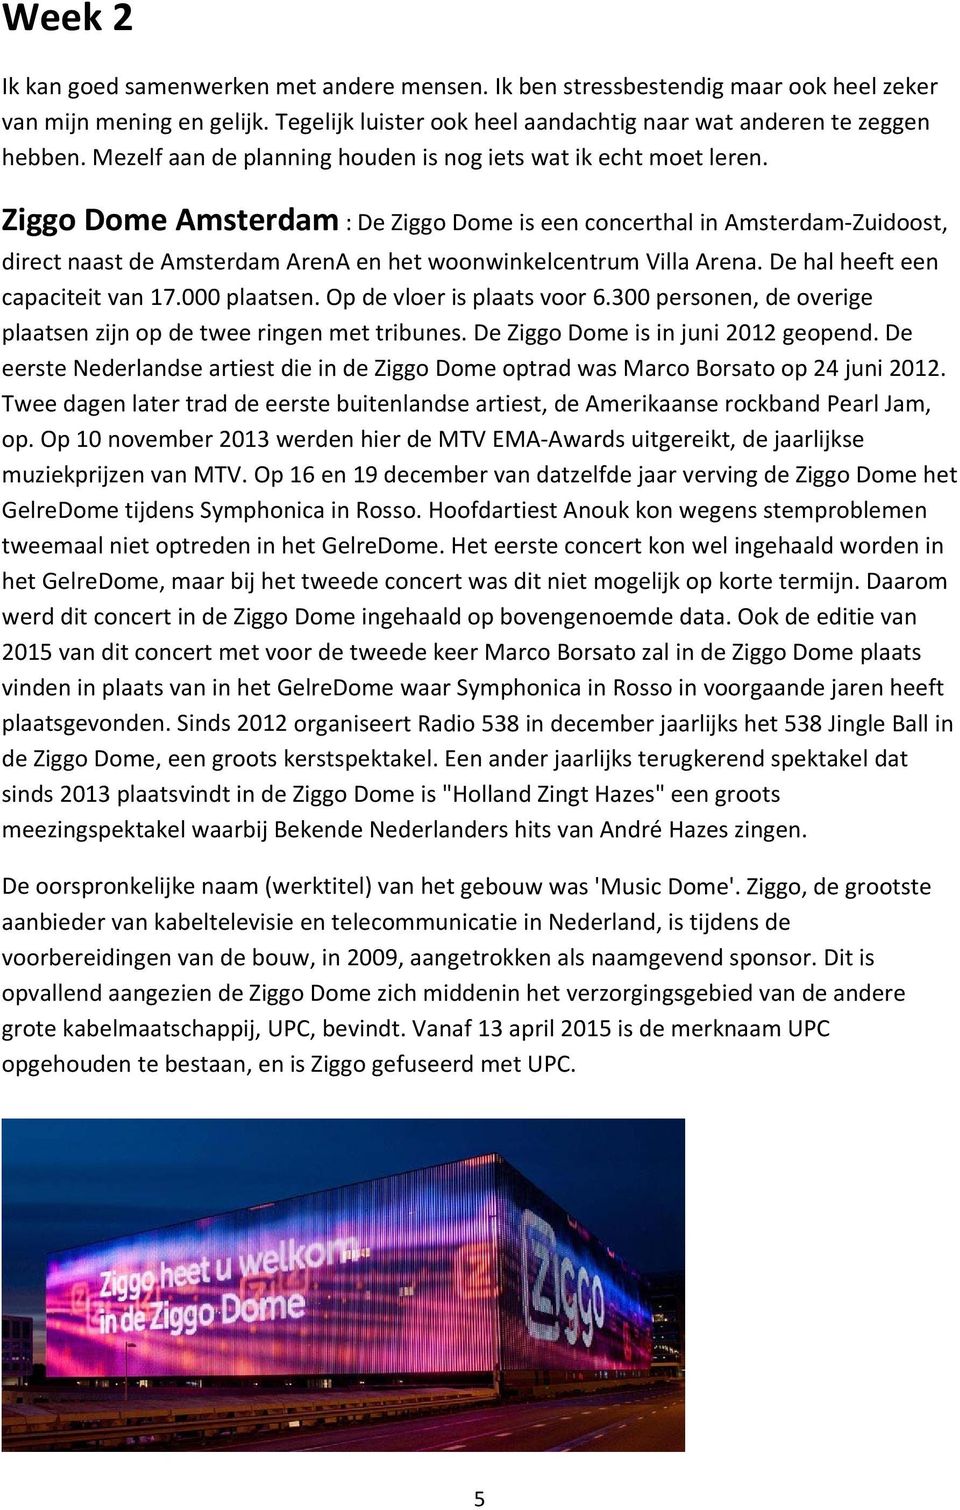 Ziggo Dome Amsterdam : De Ziggo Dome is een concerthal in Amsterdam Zuidoost, direct naast de Amsterdam ArenA en het woonwinkelcentrum Villa Arena. De hal heeft een capaciteit van 17.000 plaatsen.